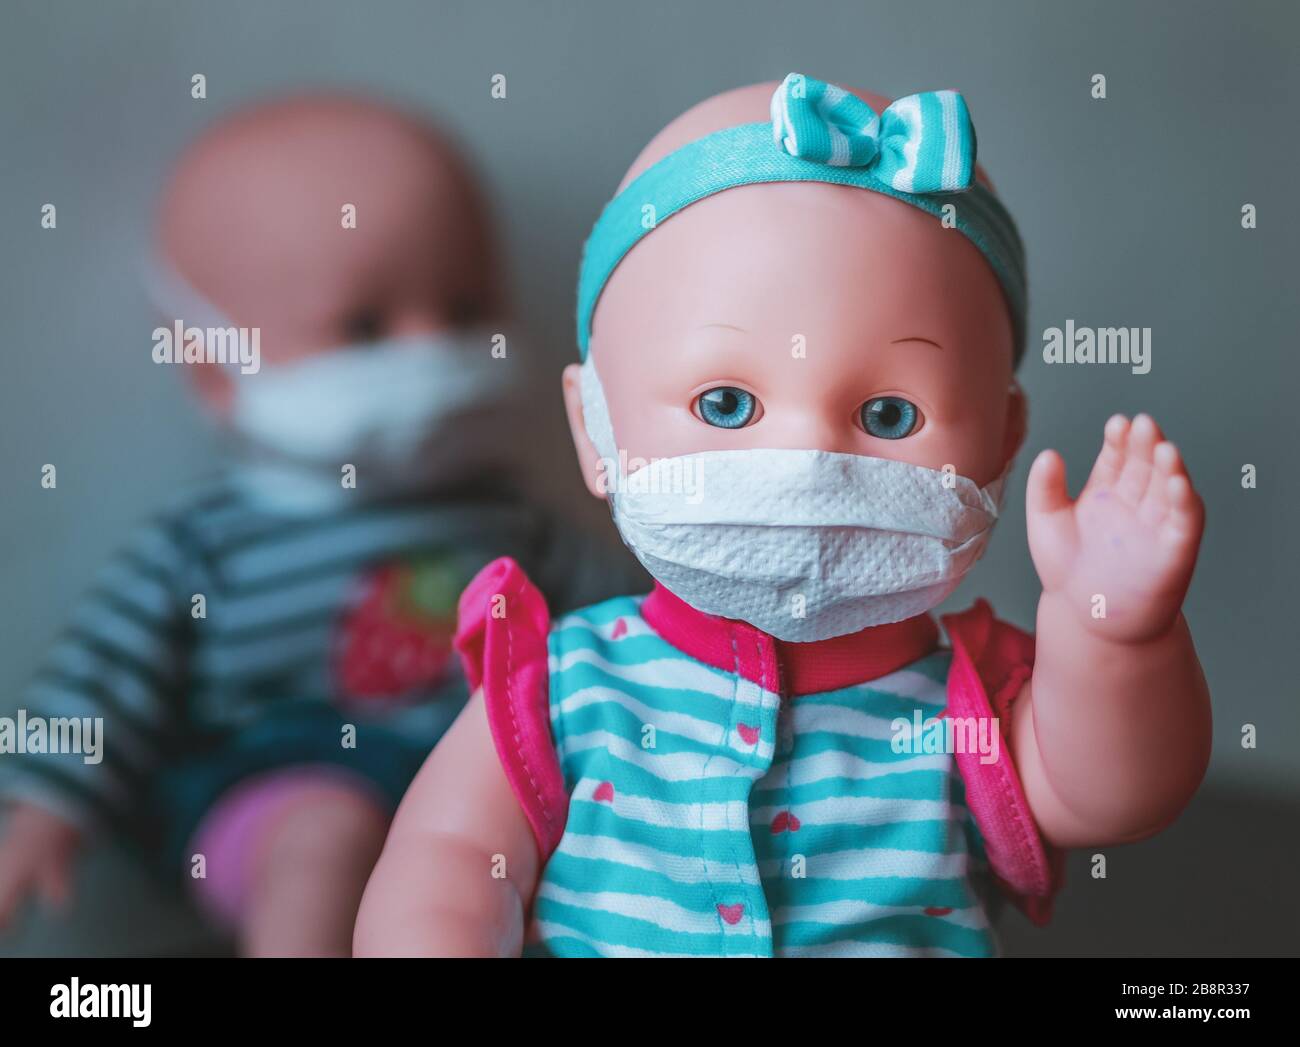 Eine ansteckende Babypuppe, bei der die verunreinigte Hand angehoben wird, dahinter befindet sich eine weitere Puppe mit einer Maske Stockfoto